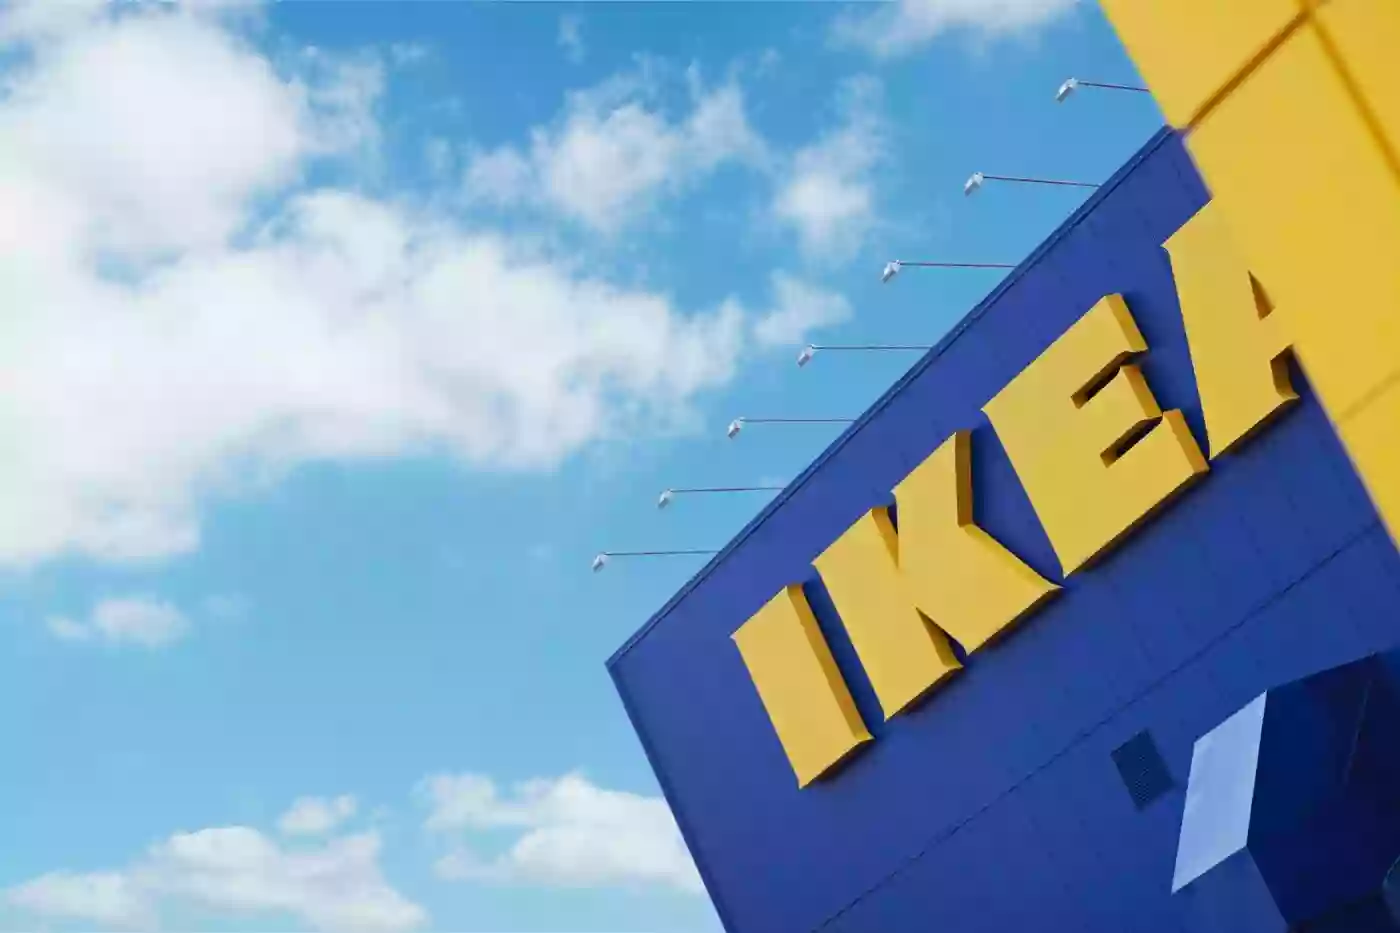 IKEA Kaarst